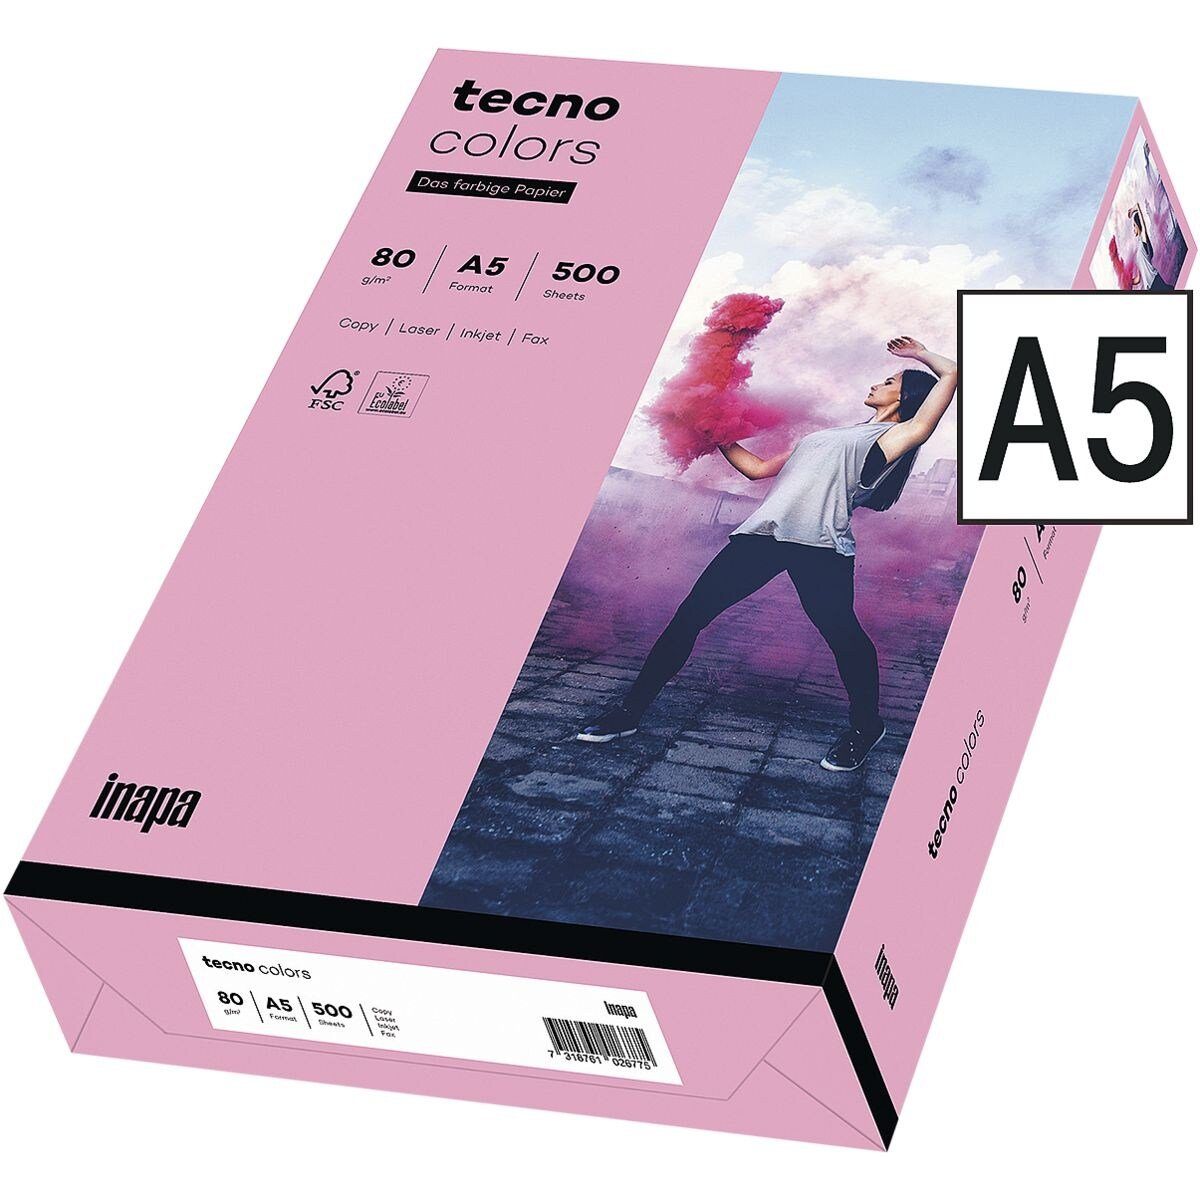 Inapa tecno DIN A5, Format g/m² und rosa Pastellfarben, Kopierpapier Rainbow, Drucker- 80